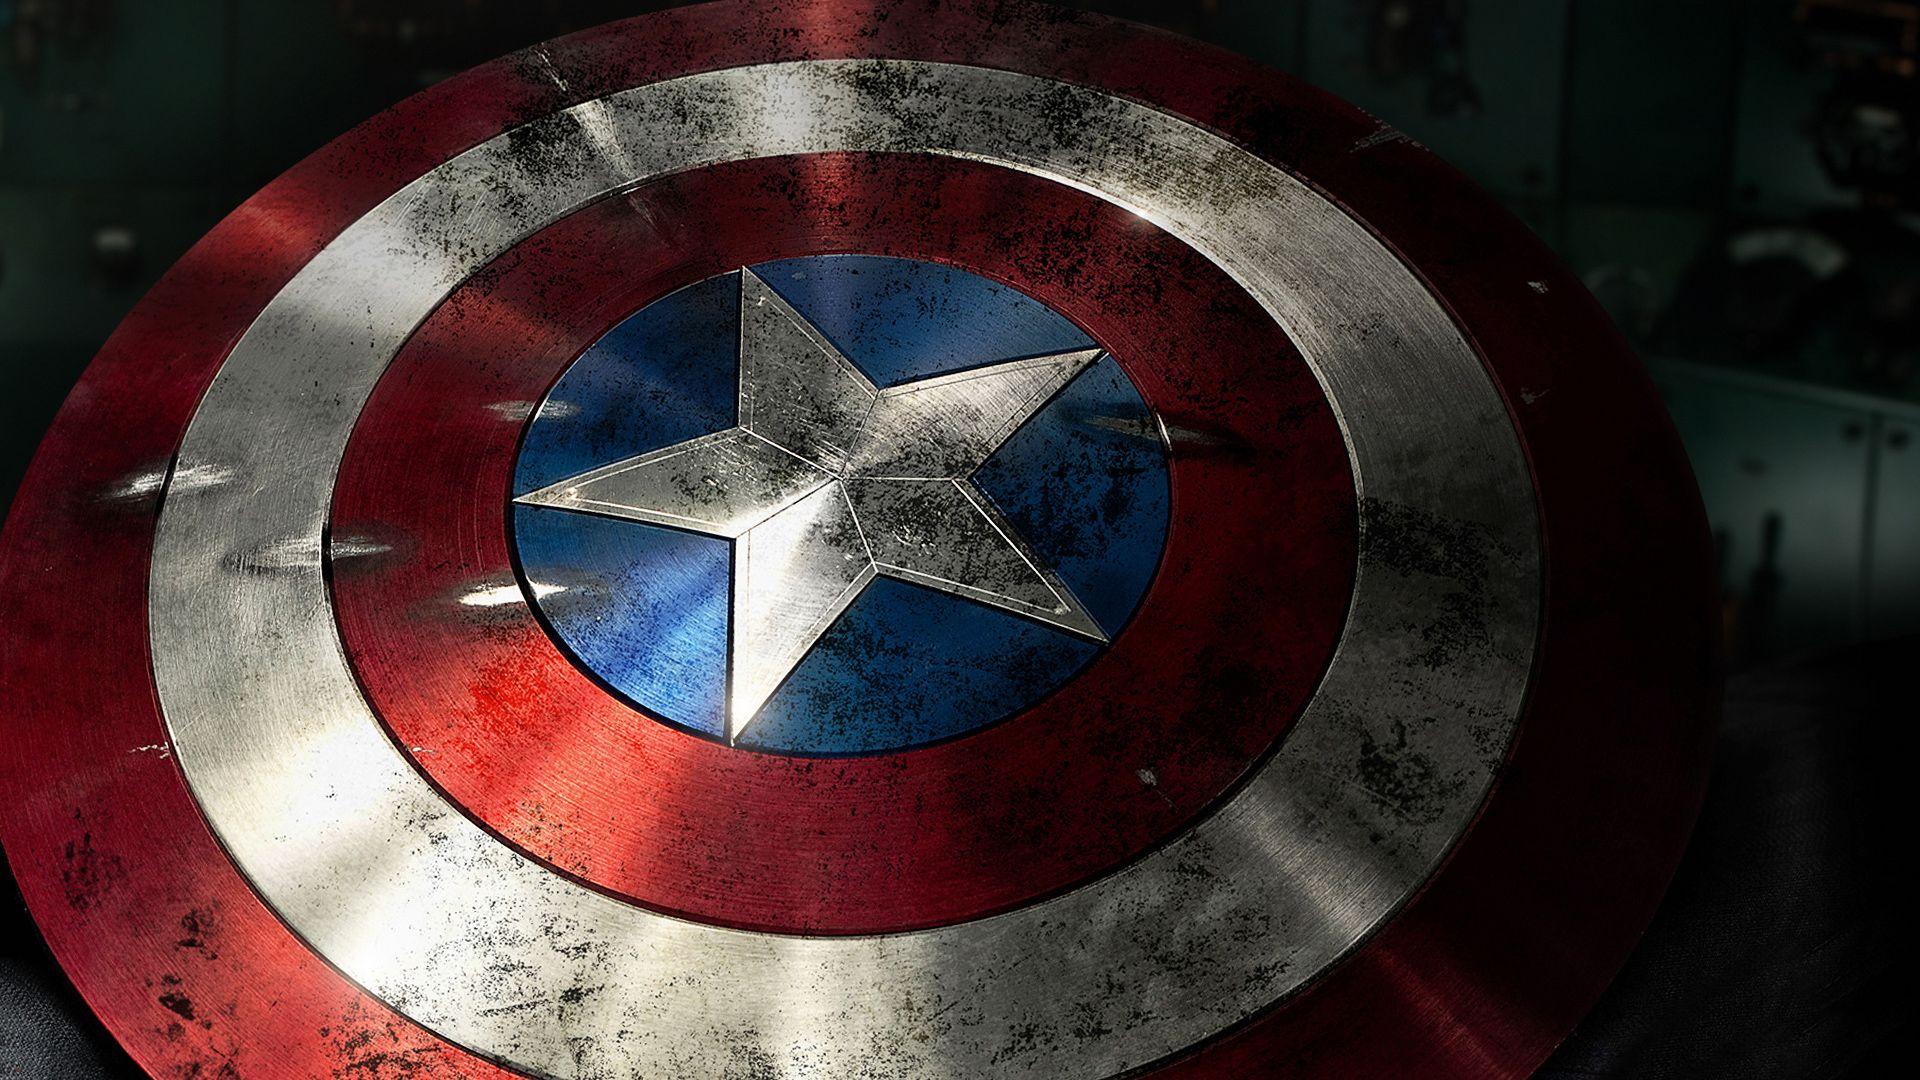 His shield. Captain america shield wallpaper, Captain america wallpaper, Captain america